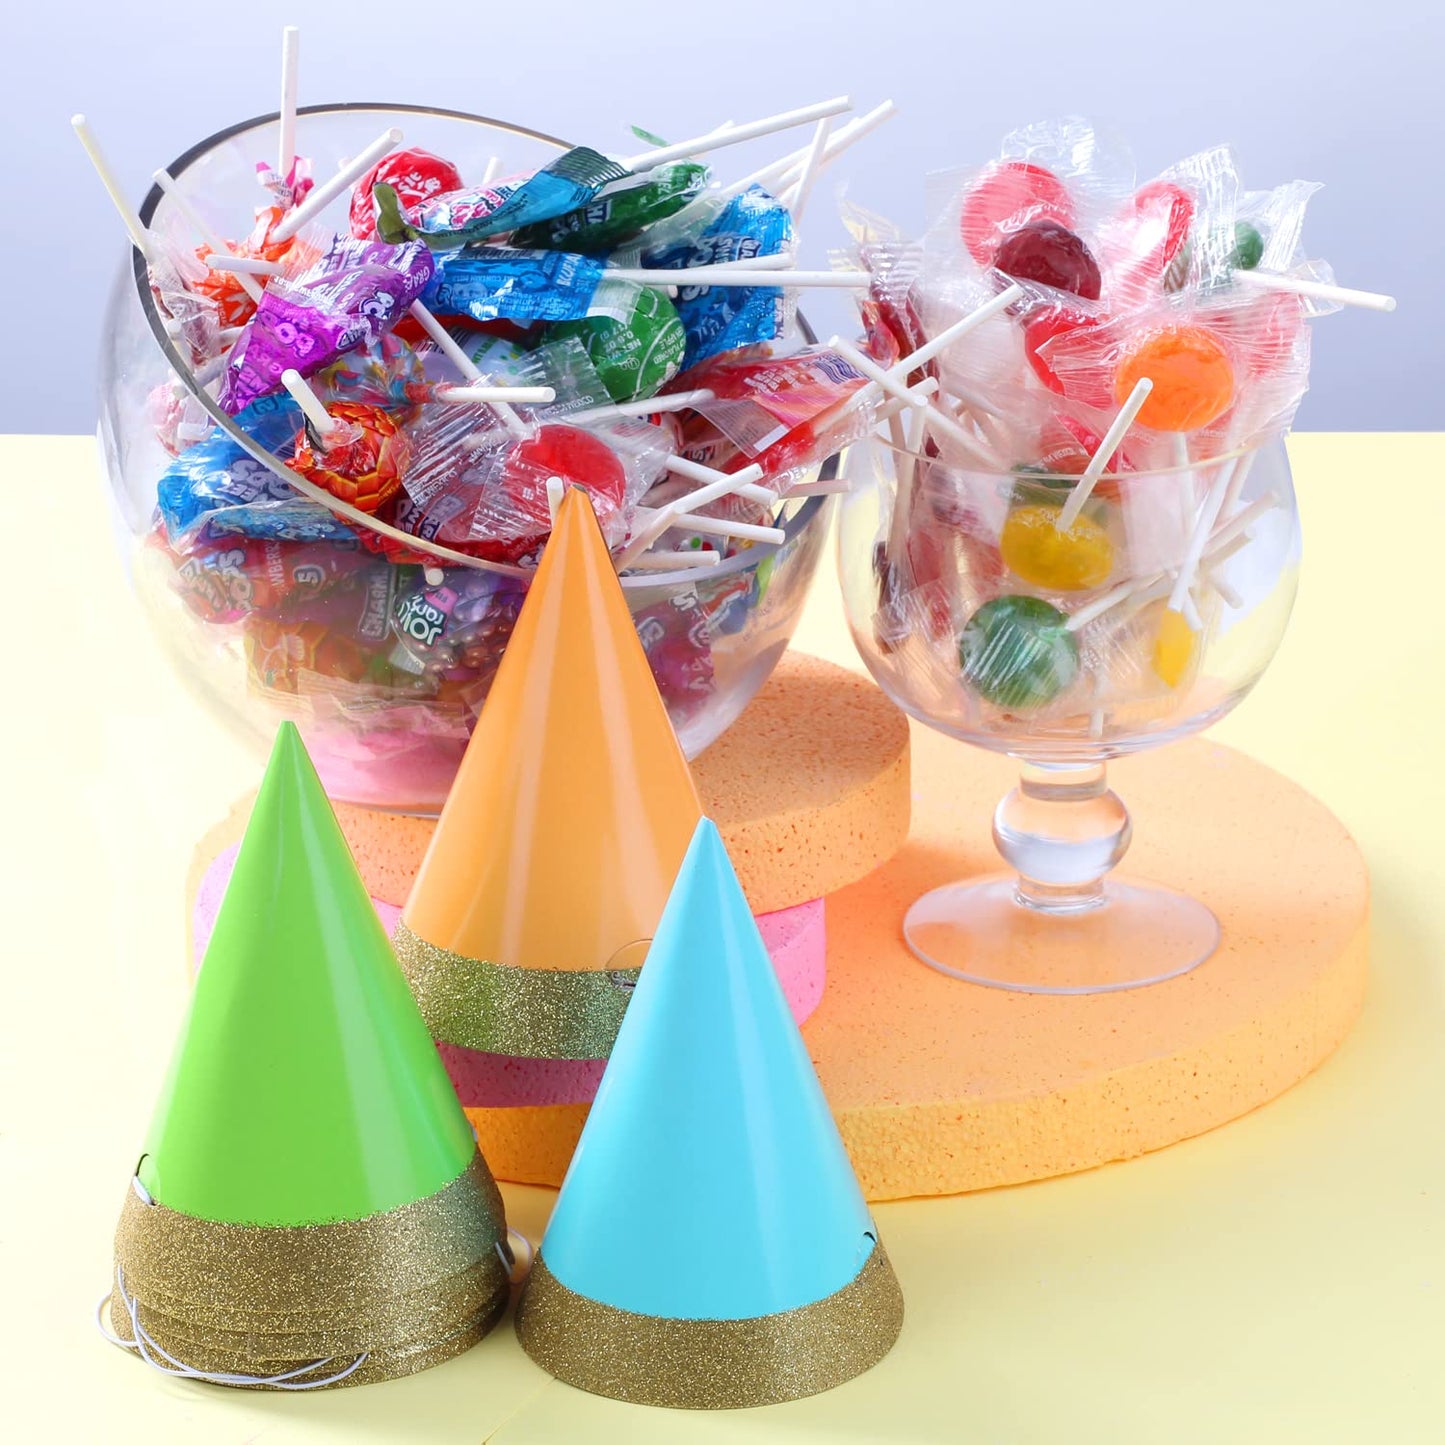 Classic Lollipops - 3 Pounds - Assorted Fruit Flavors